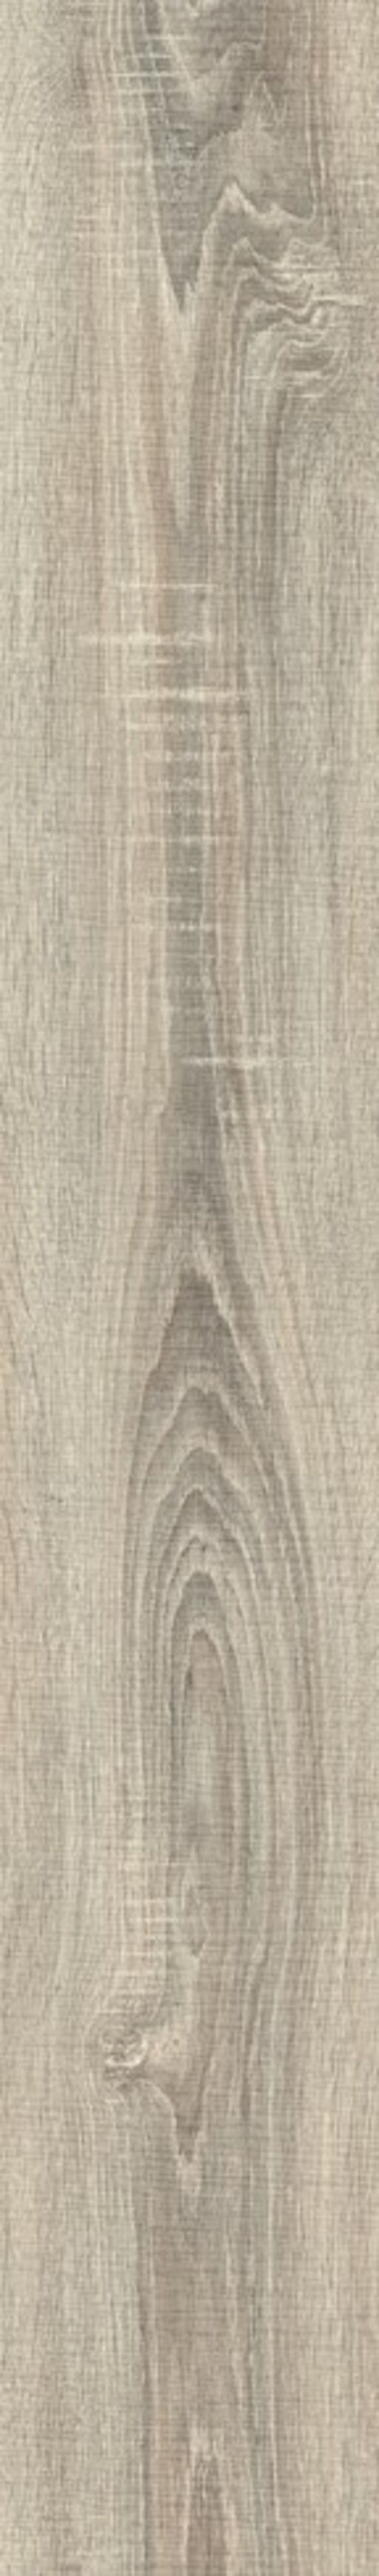 Woodland, Wyre Oak Laminate Flooring, 8mm Image 2